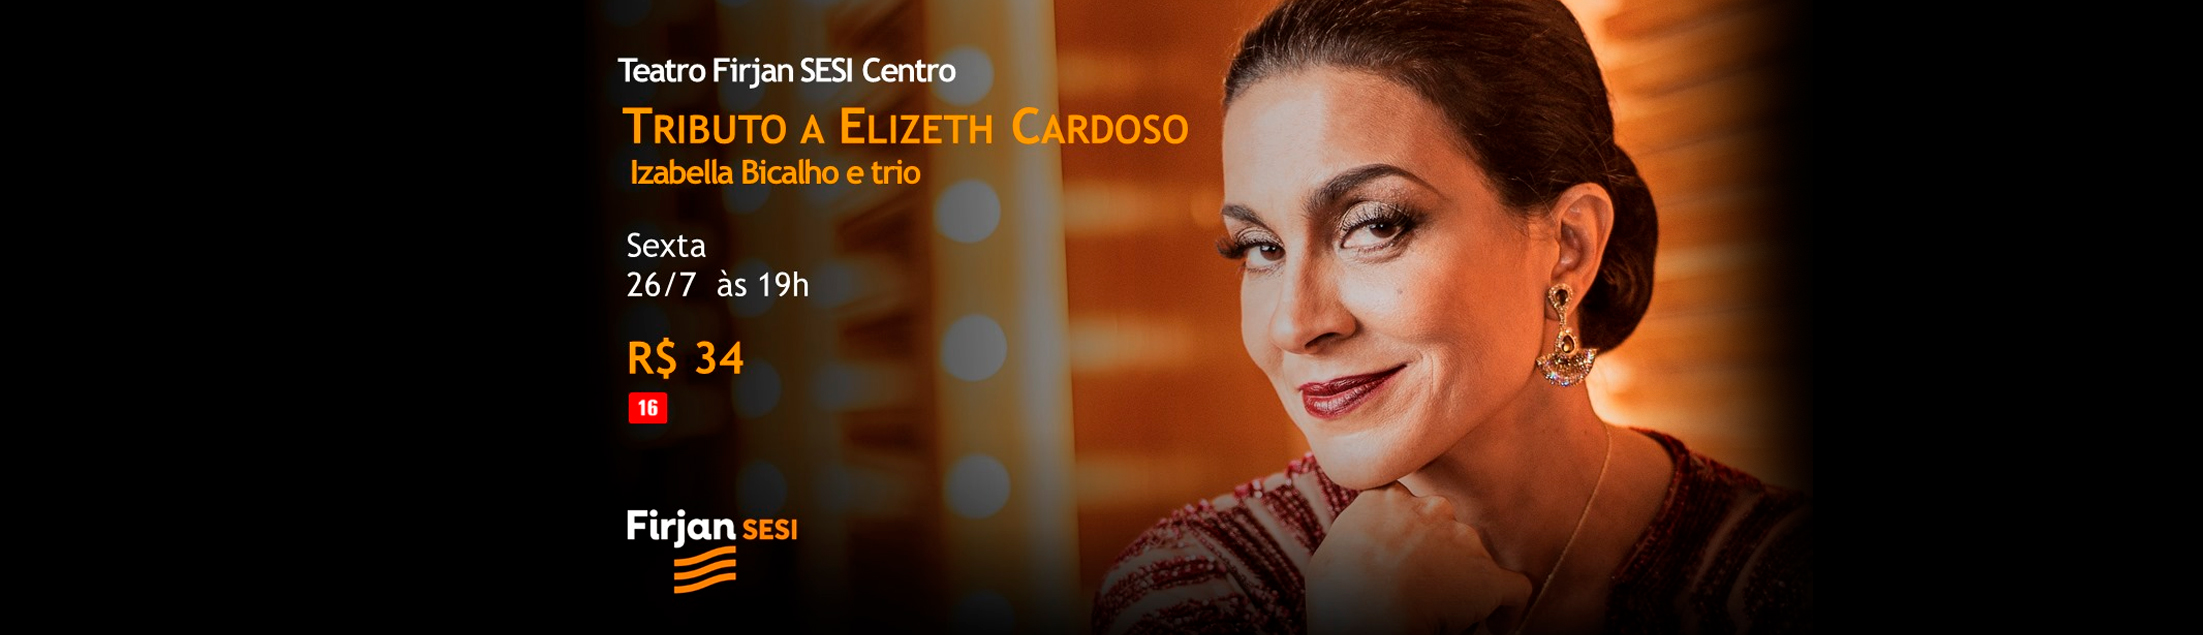 Tributo a Elizeth Cardoso com Izabella Bicalho e Trio